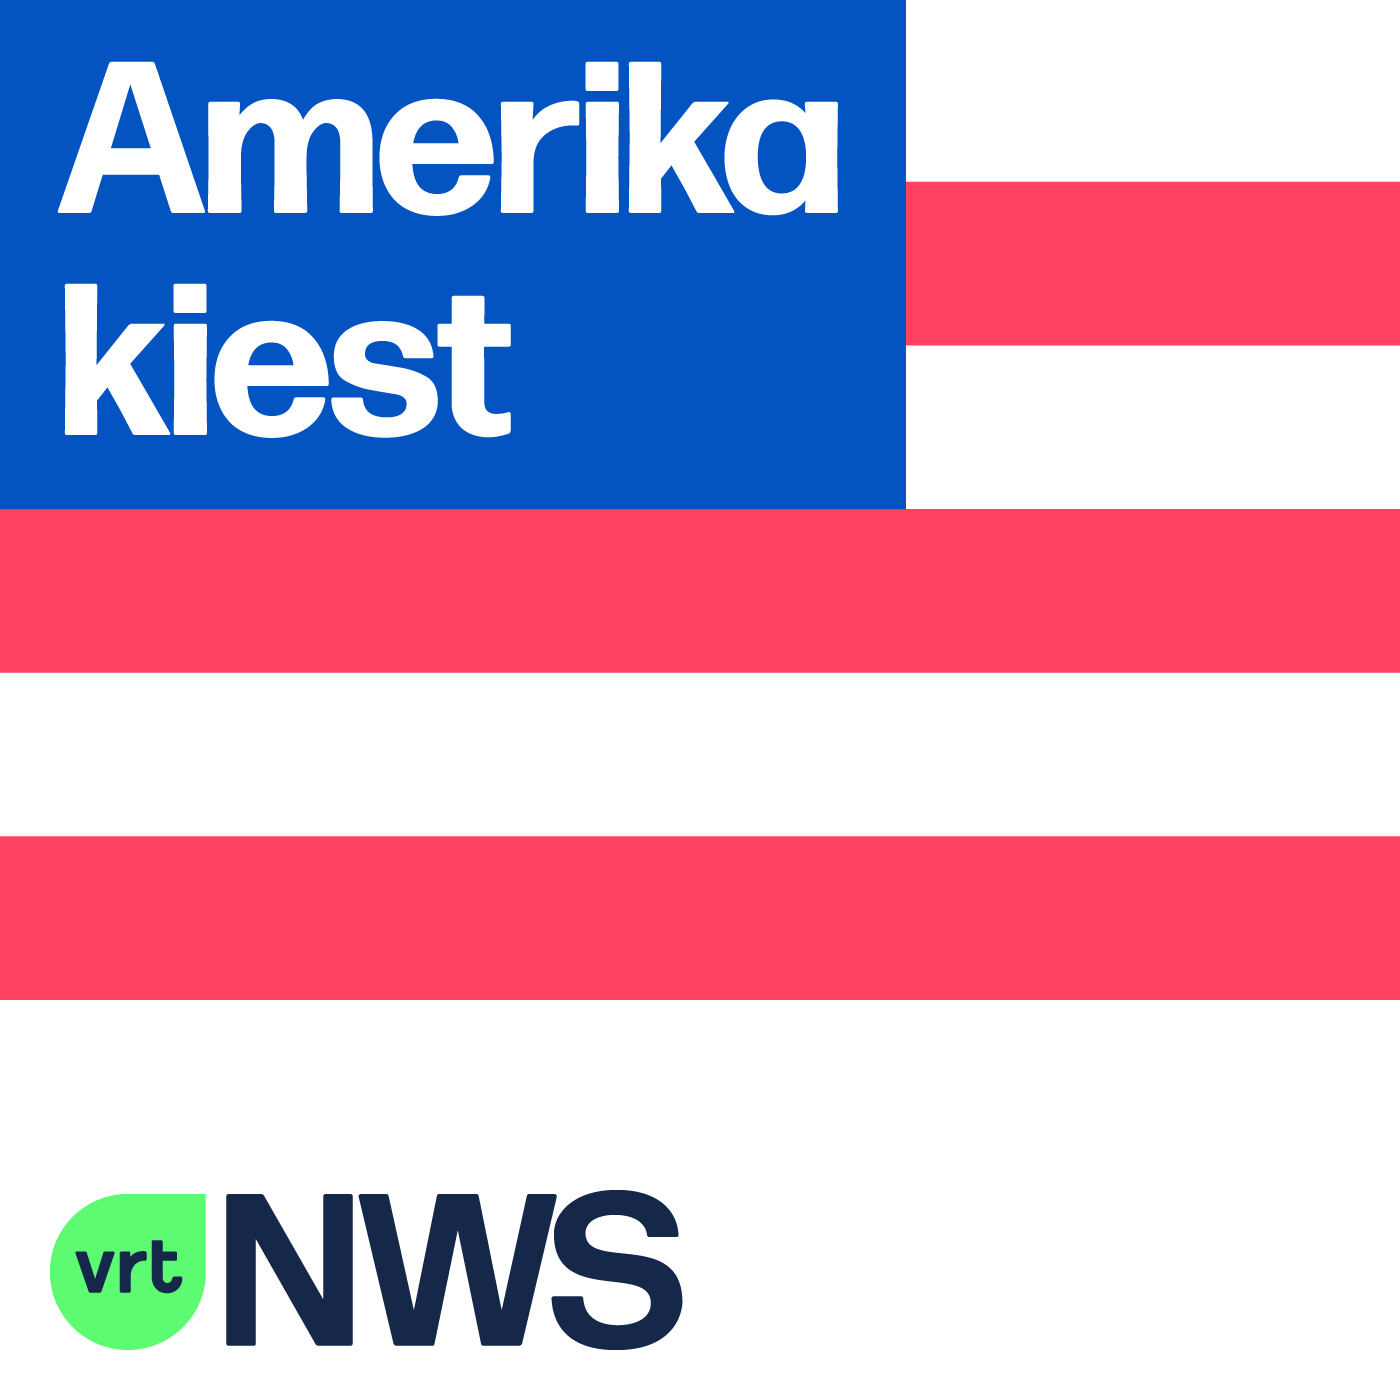 Logo Amerika kiest (c) VRT